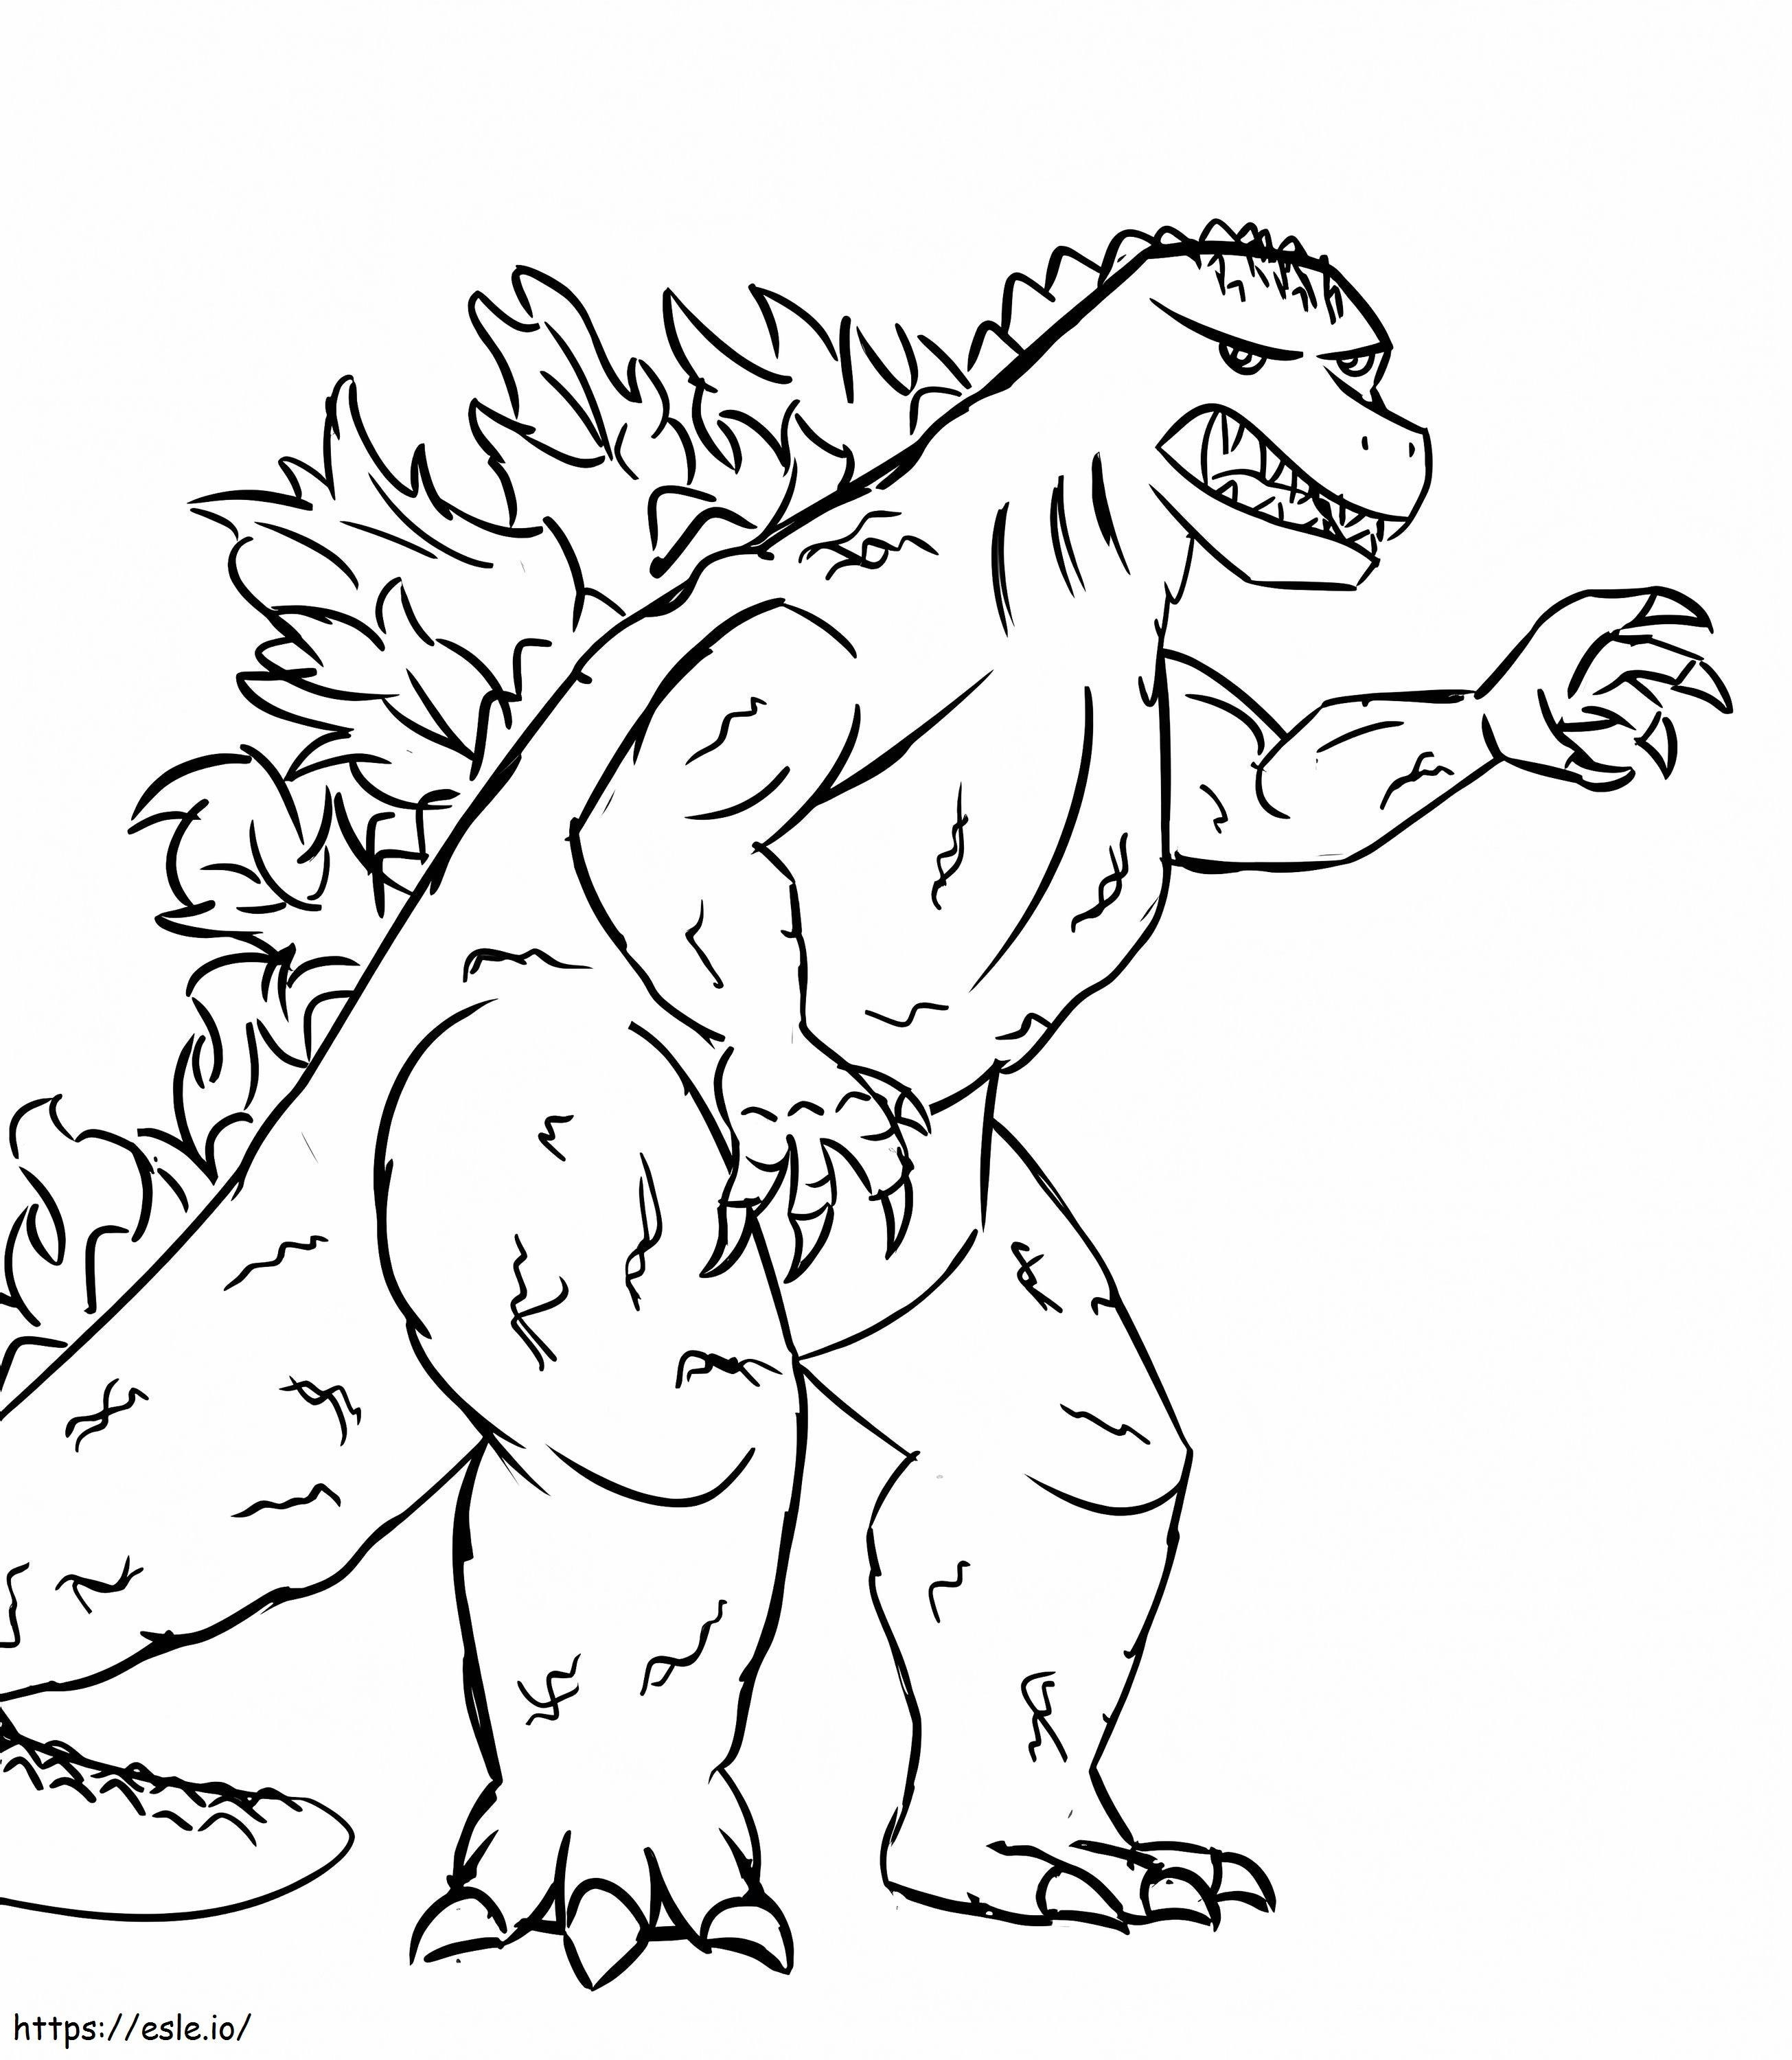 Beautiful Angry Godzilla coloring page